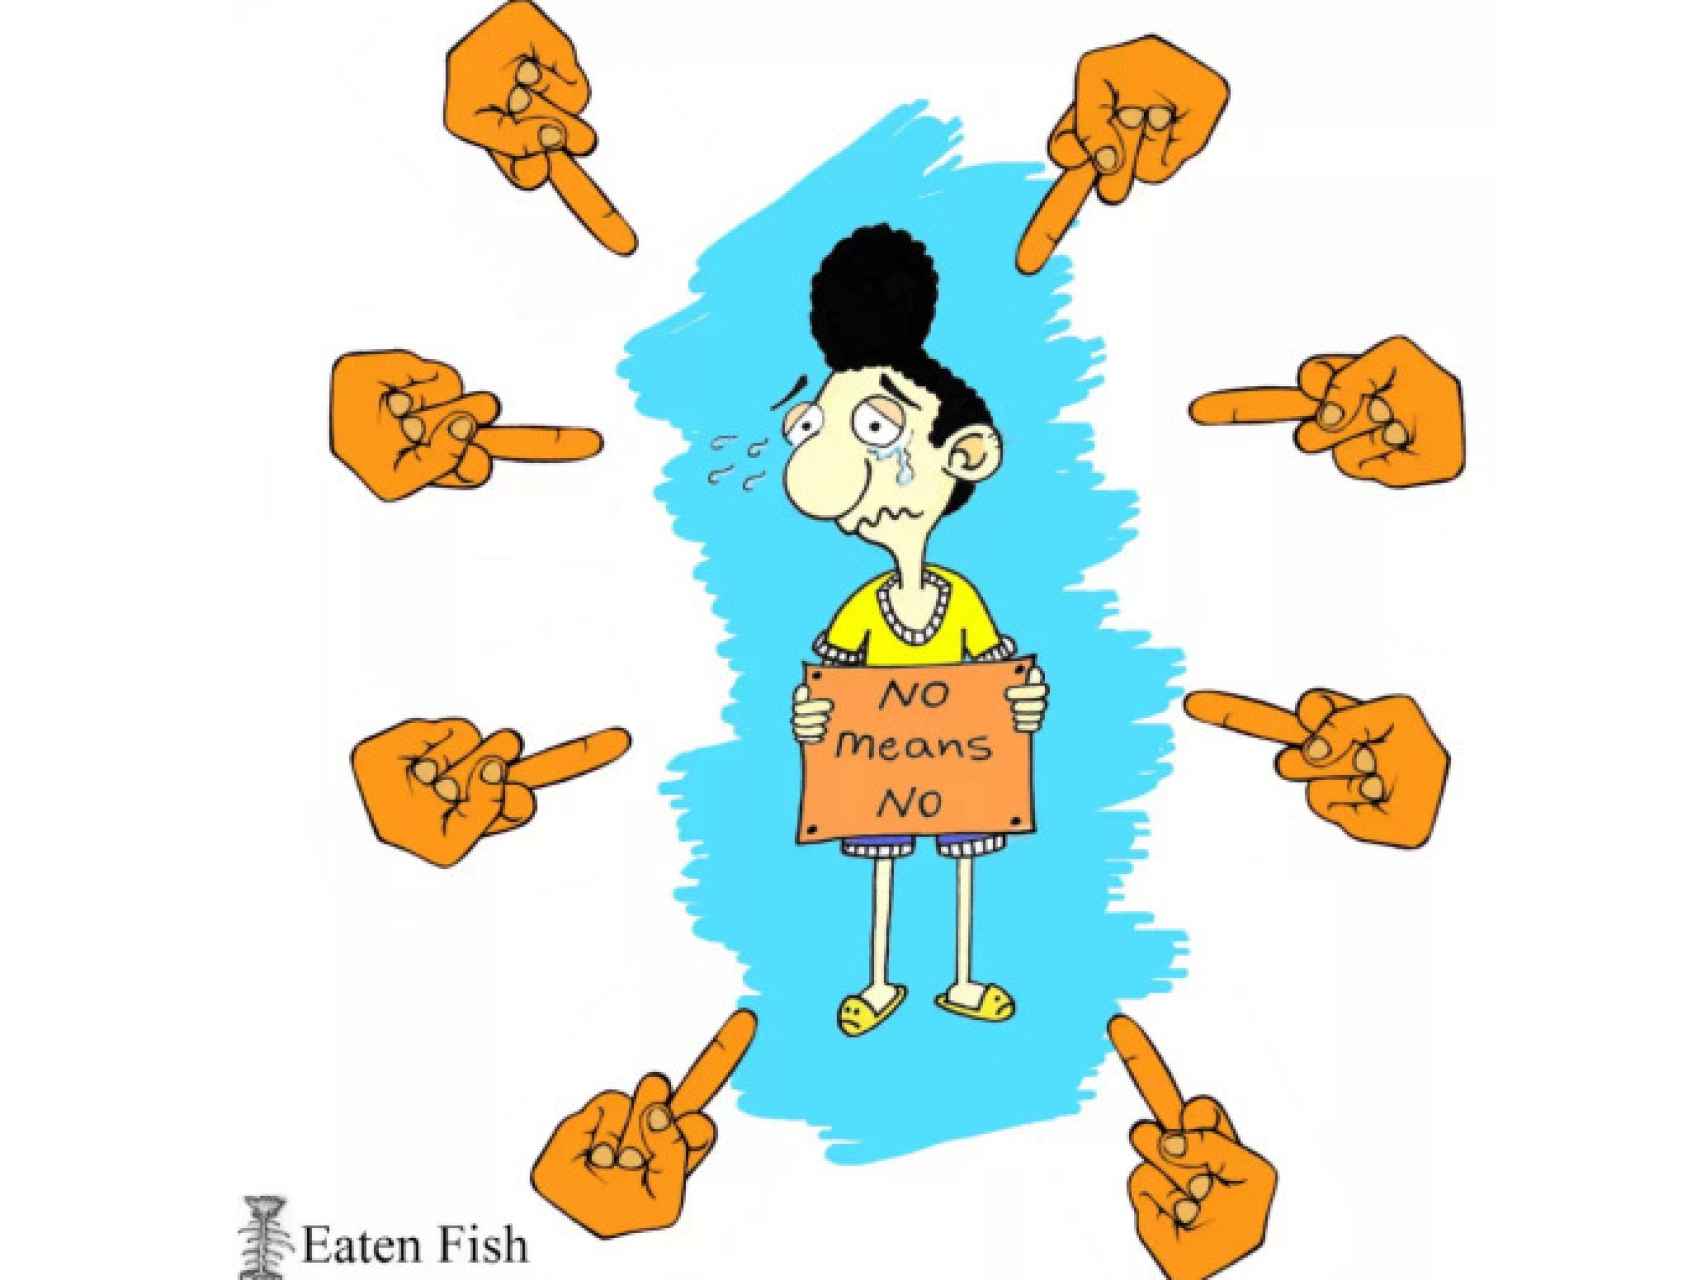 Viñeta de Mr. Eaten Fish donde se autoretrata con un cartel que dice: no significa no.